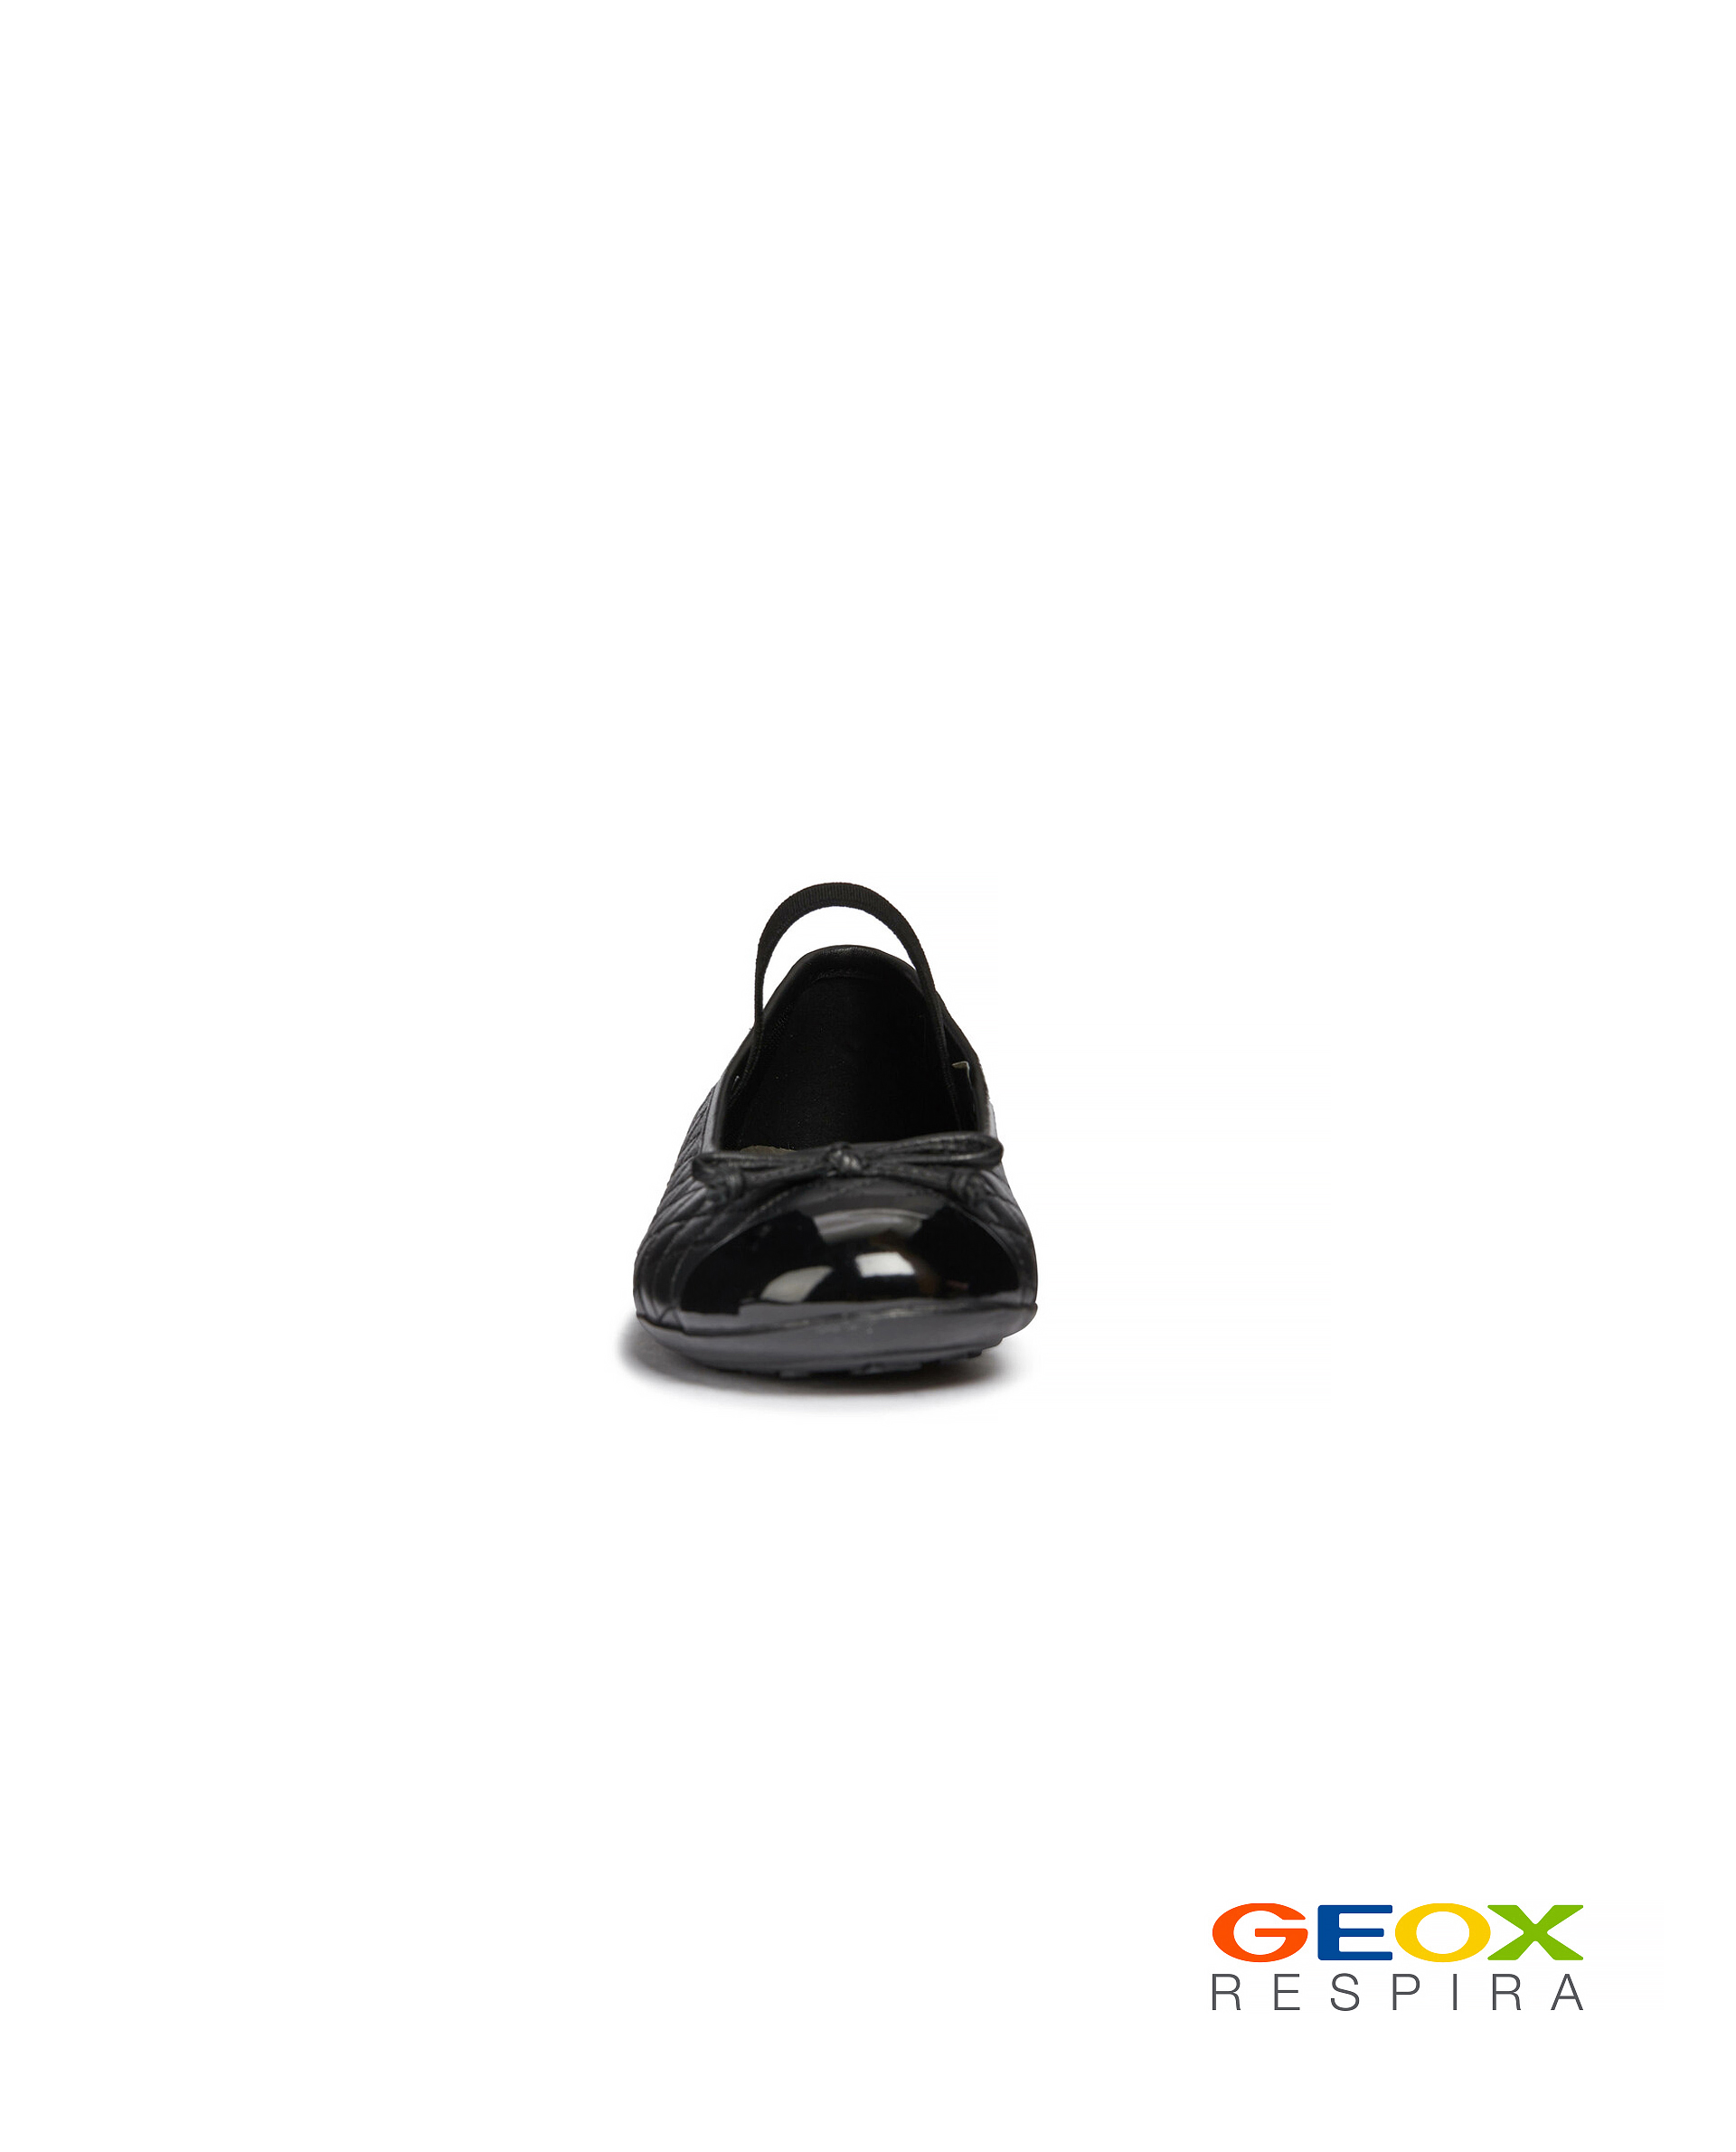 Черные балетки Geox 219GSGS0001, размер 33, цвет черный - фото 3